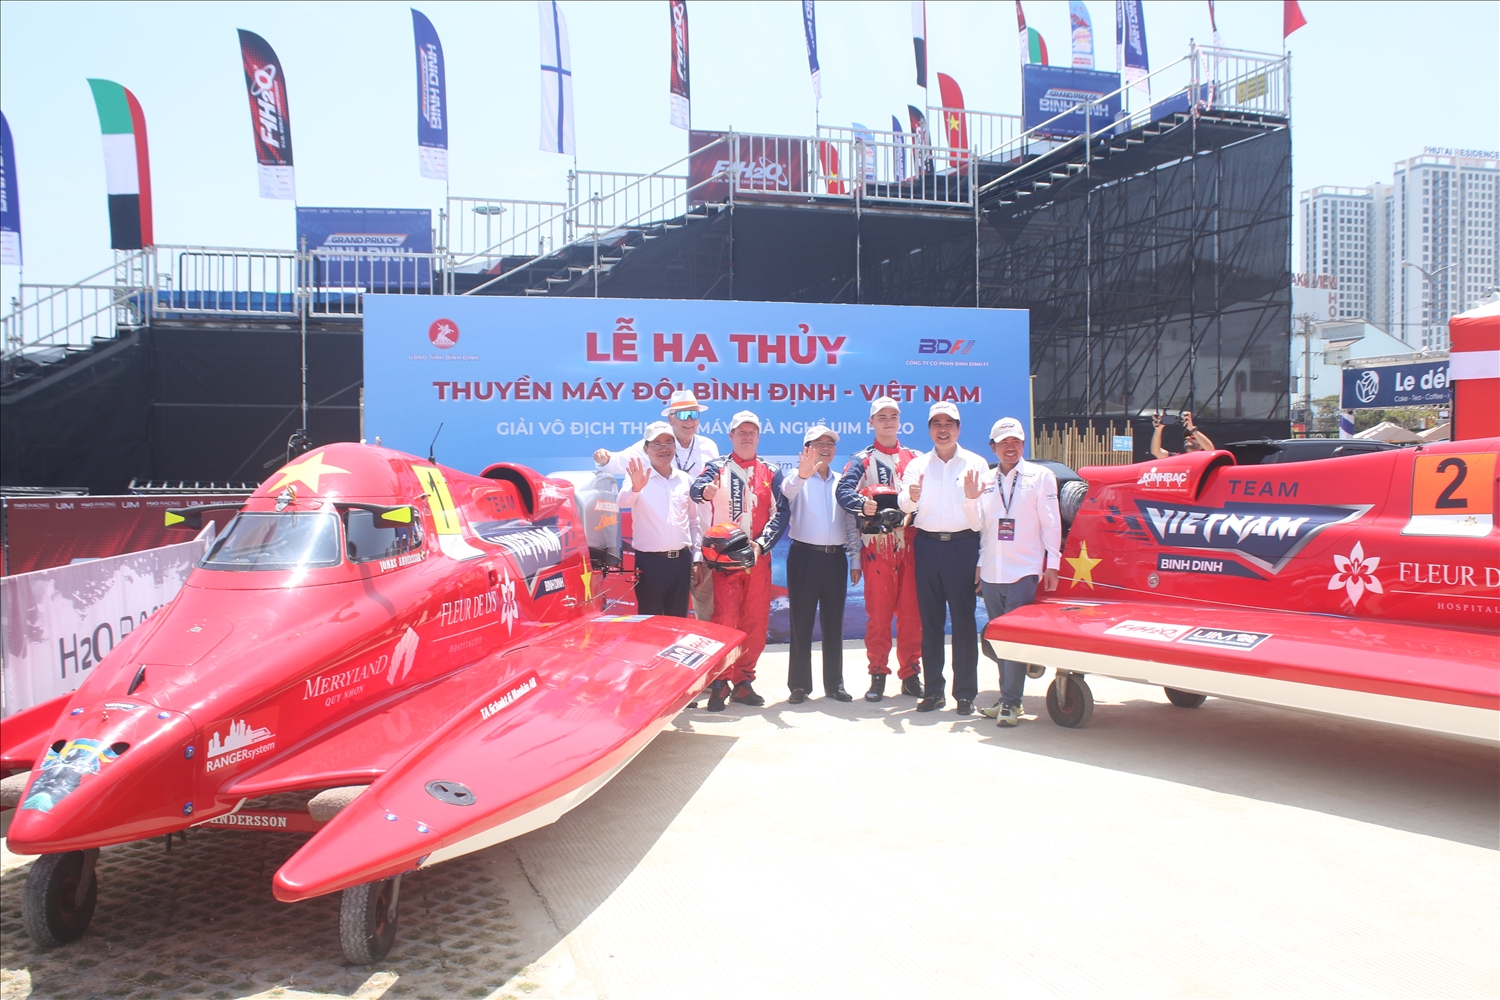 Lãnh đạo tỉnh Bình Định tham dự buổi Lễ hạ thủy thuyền máy của đội F1H2O Bình Định – Việt Nam